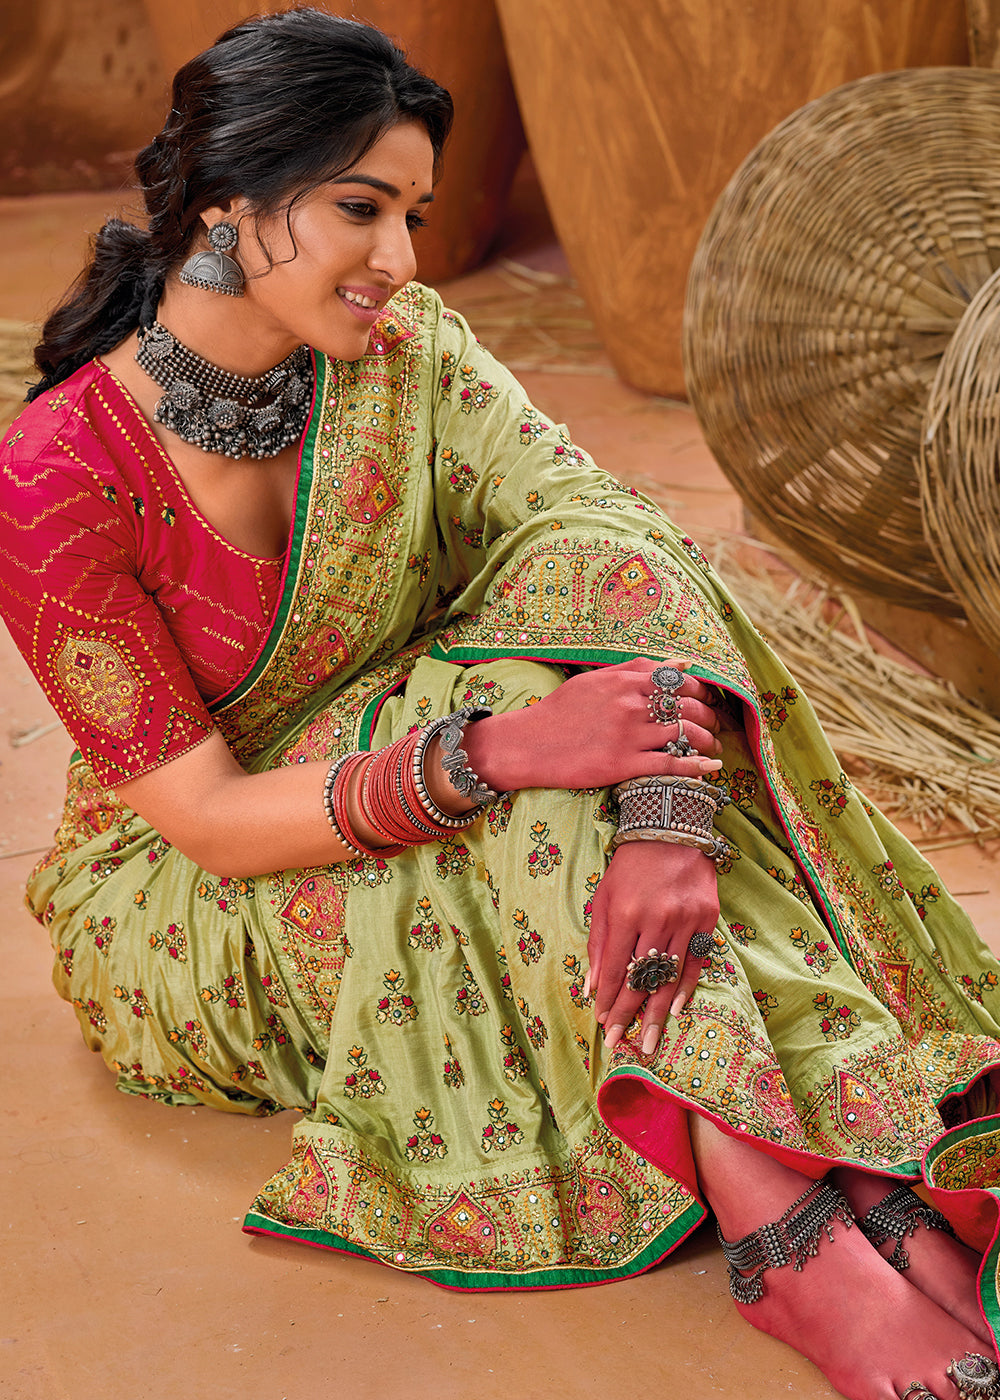 Buy Now Green Kachhi & Mirror Work Traditional Banarasi Saree Online in USA, UK, Canada & Worldwide at Empress Clothing. 